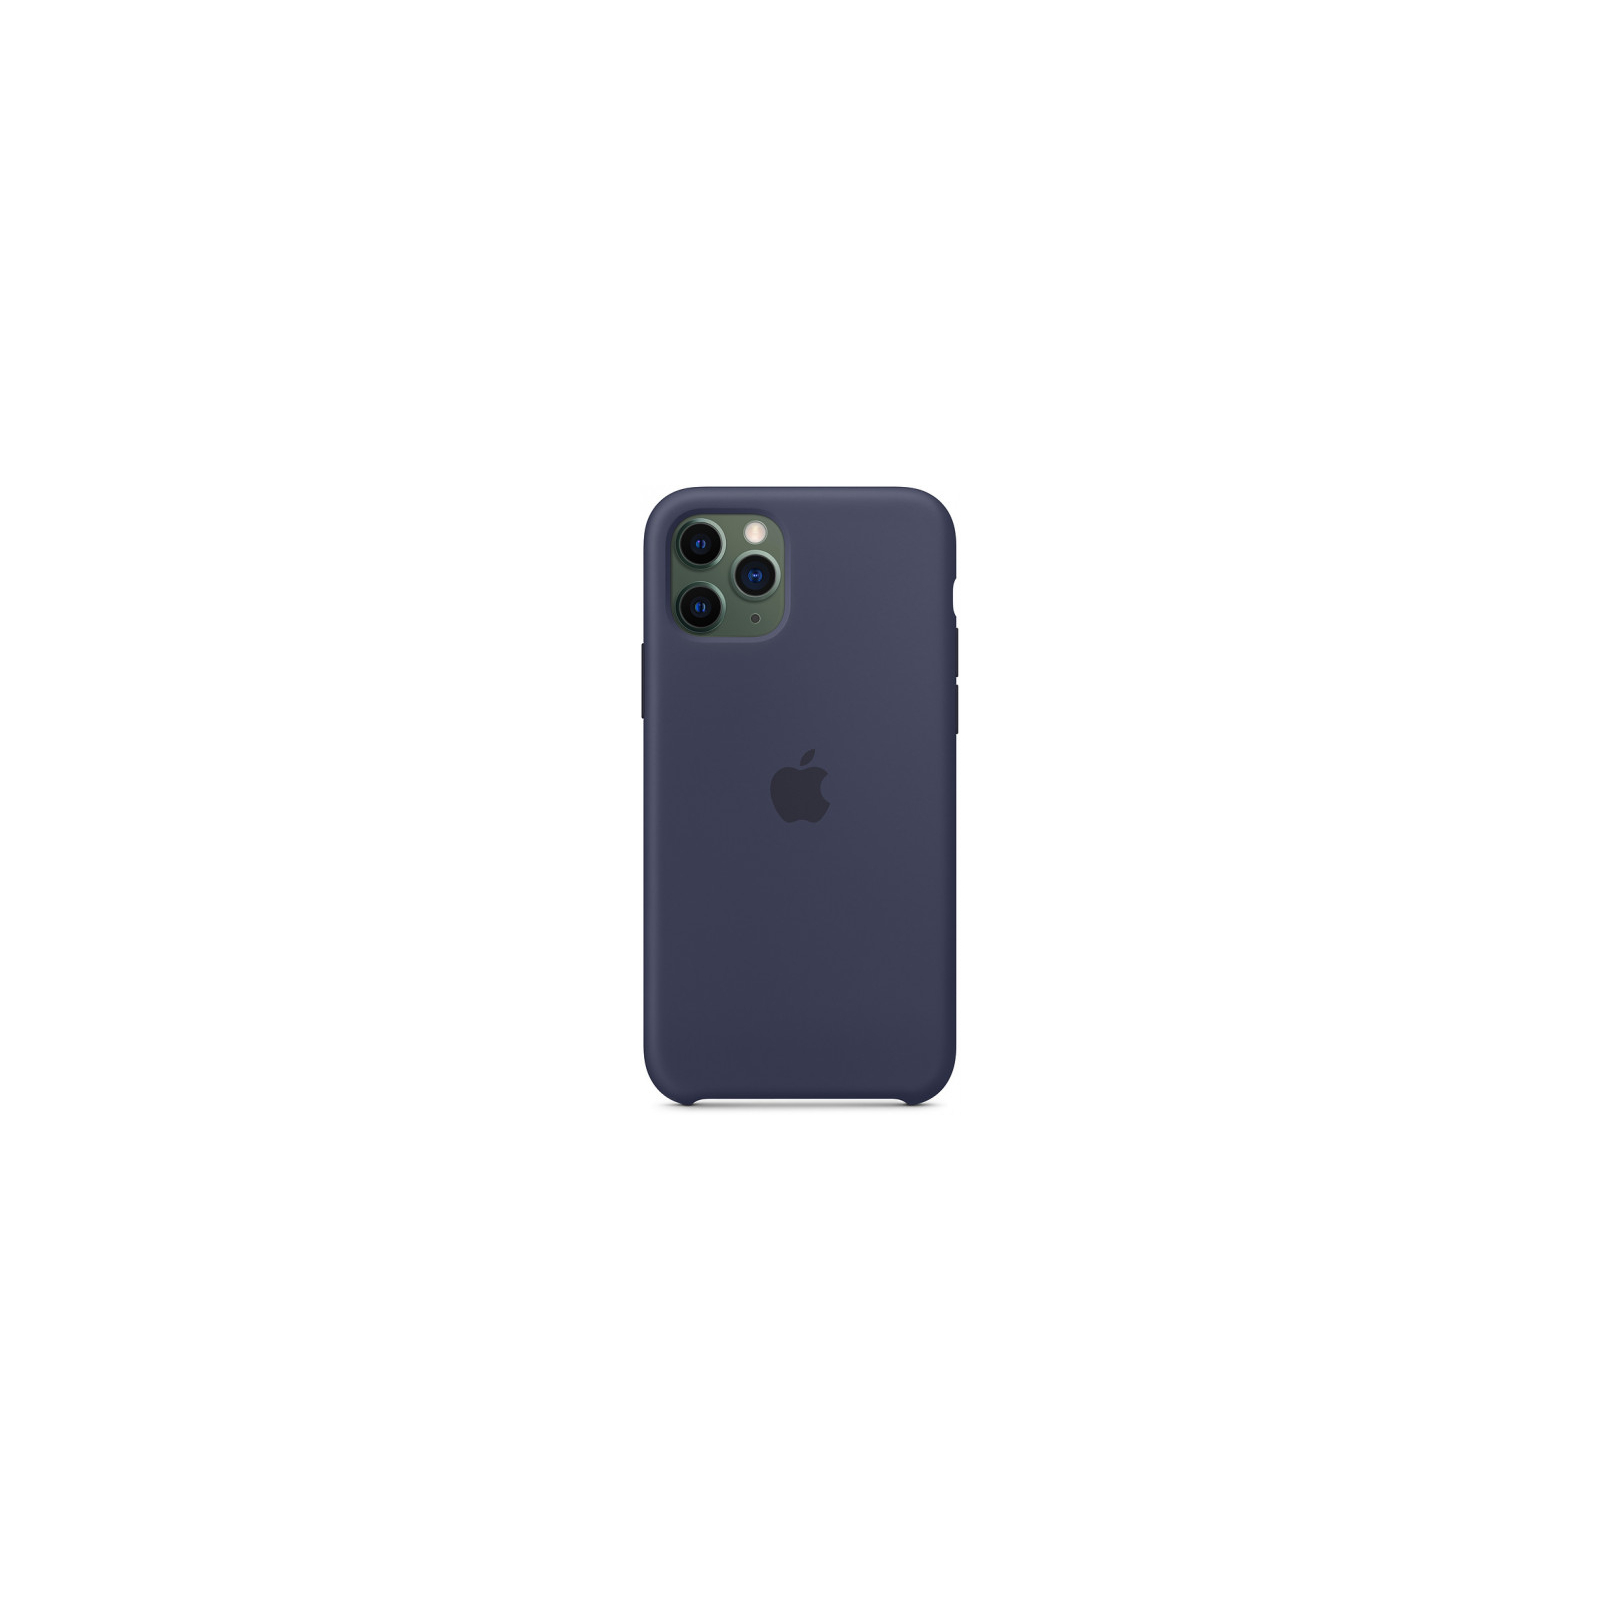 Чехол для мобильного телефона Apple iPhone 11 Pro Silicone Case - Midnight Blue (MWYJ2ZM/A) изображение 3